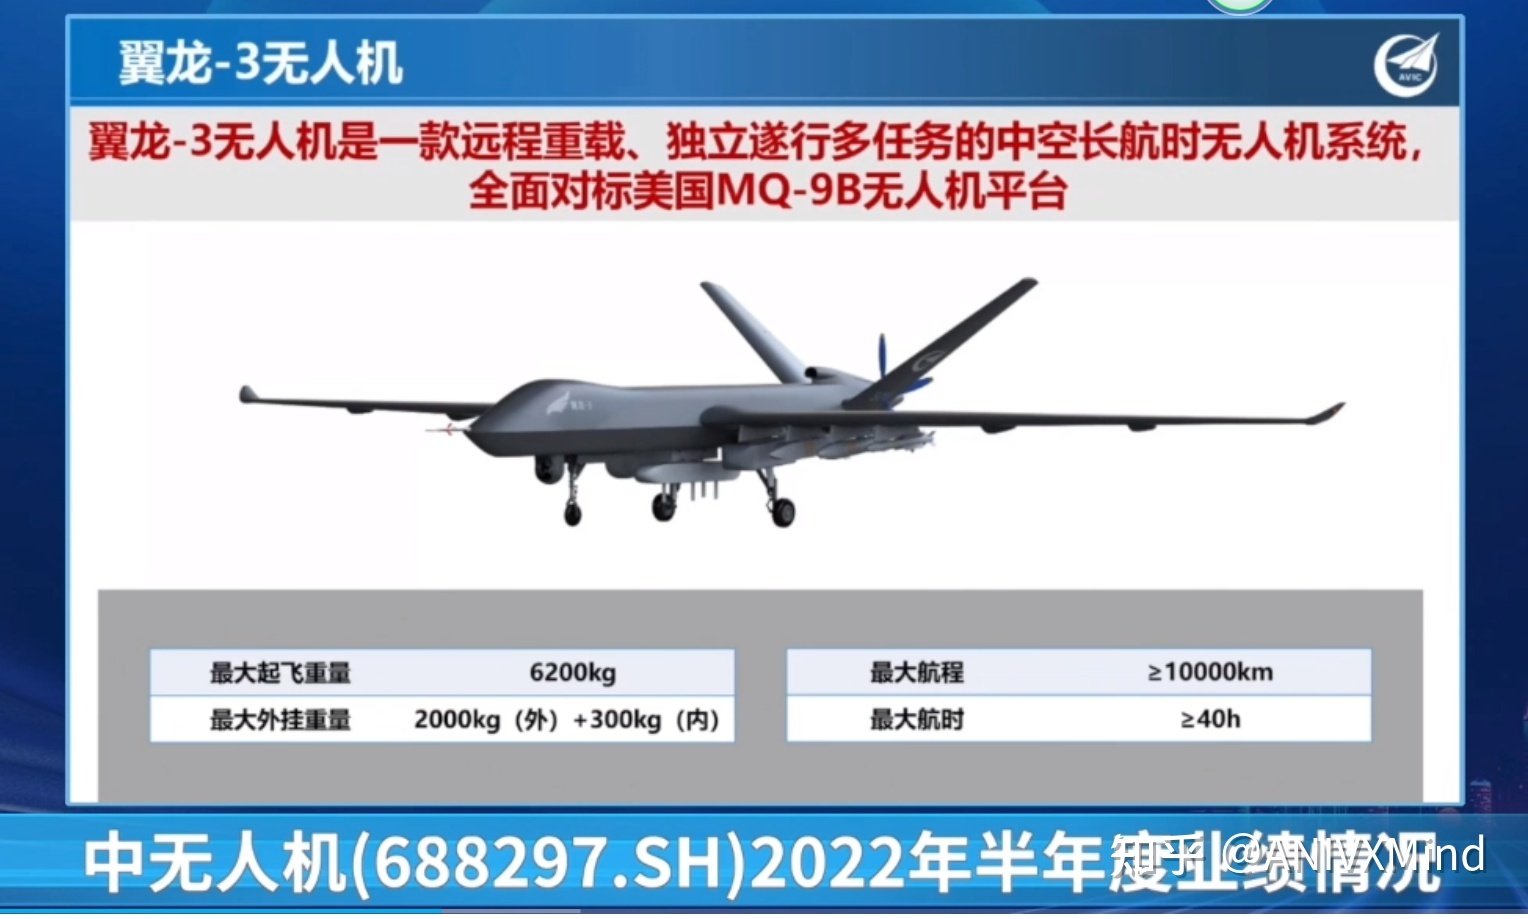 Китай презентовал ударно-разведывательный дрон Wing Loong 3 – конкурент для MQ-9B SkyGuardian с дальностью полёта 10 000 км и ракетами PL-10-2